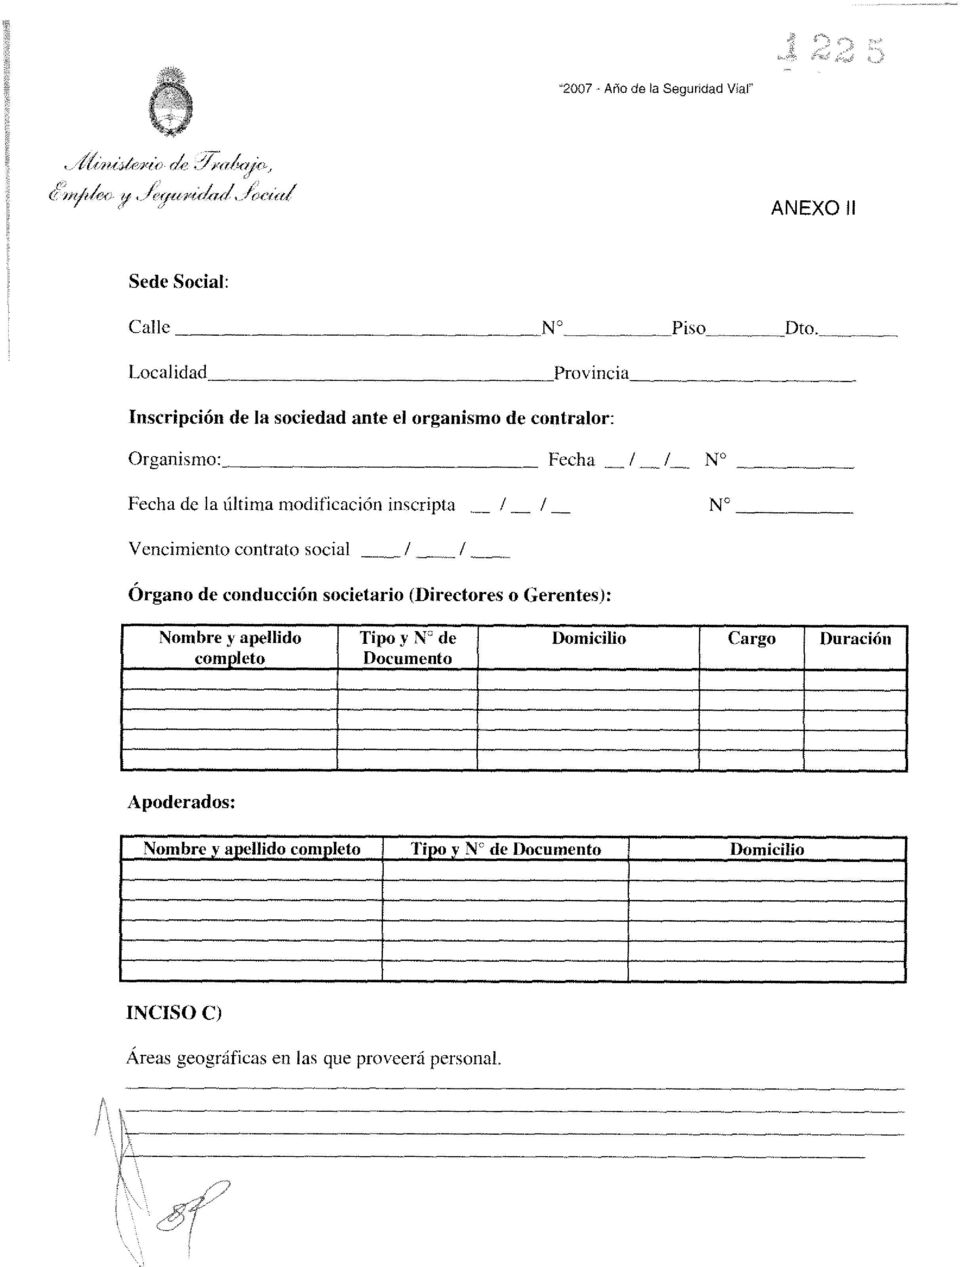 inscri Vencimiento contrato social / / órgano de conducción societario (Directores o Gerentes) : Nombre y apellido completo